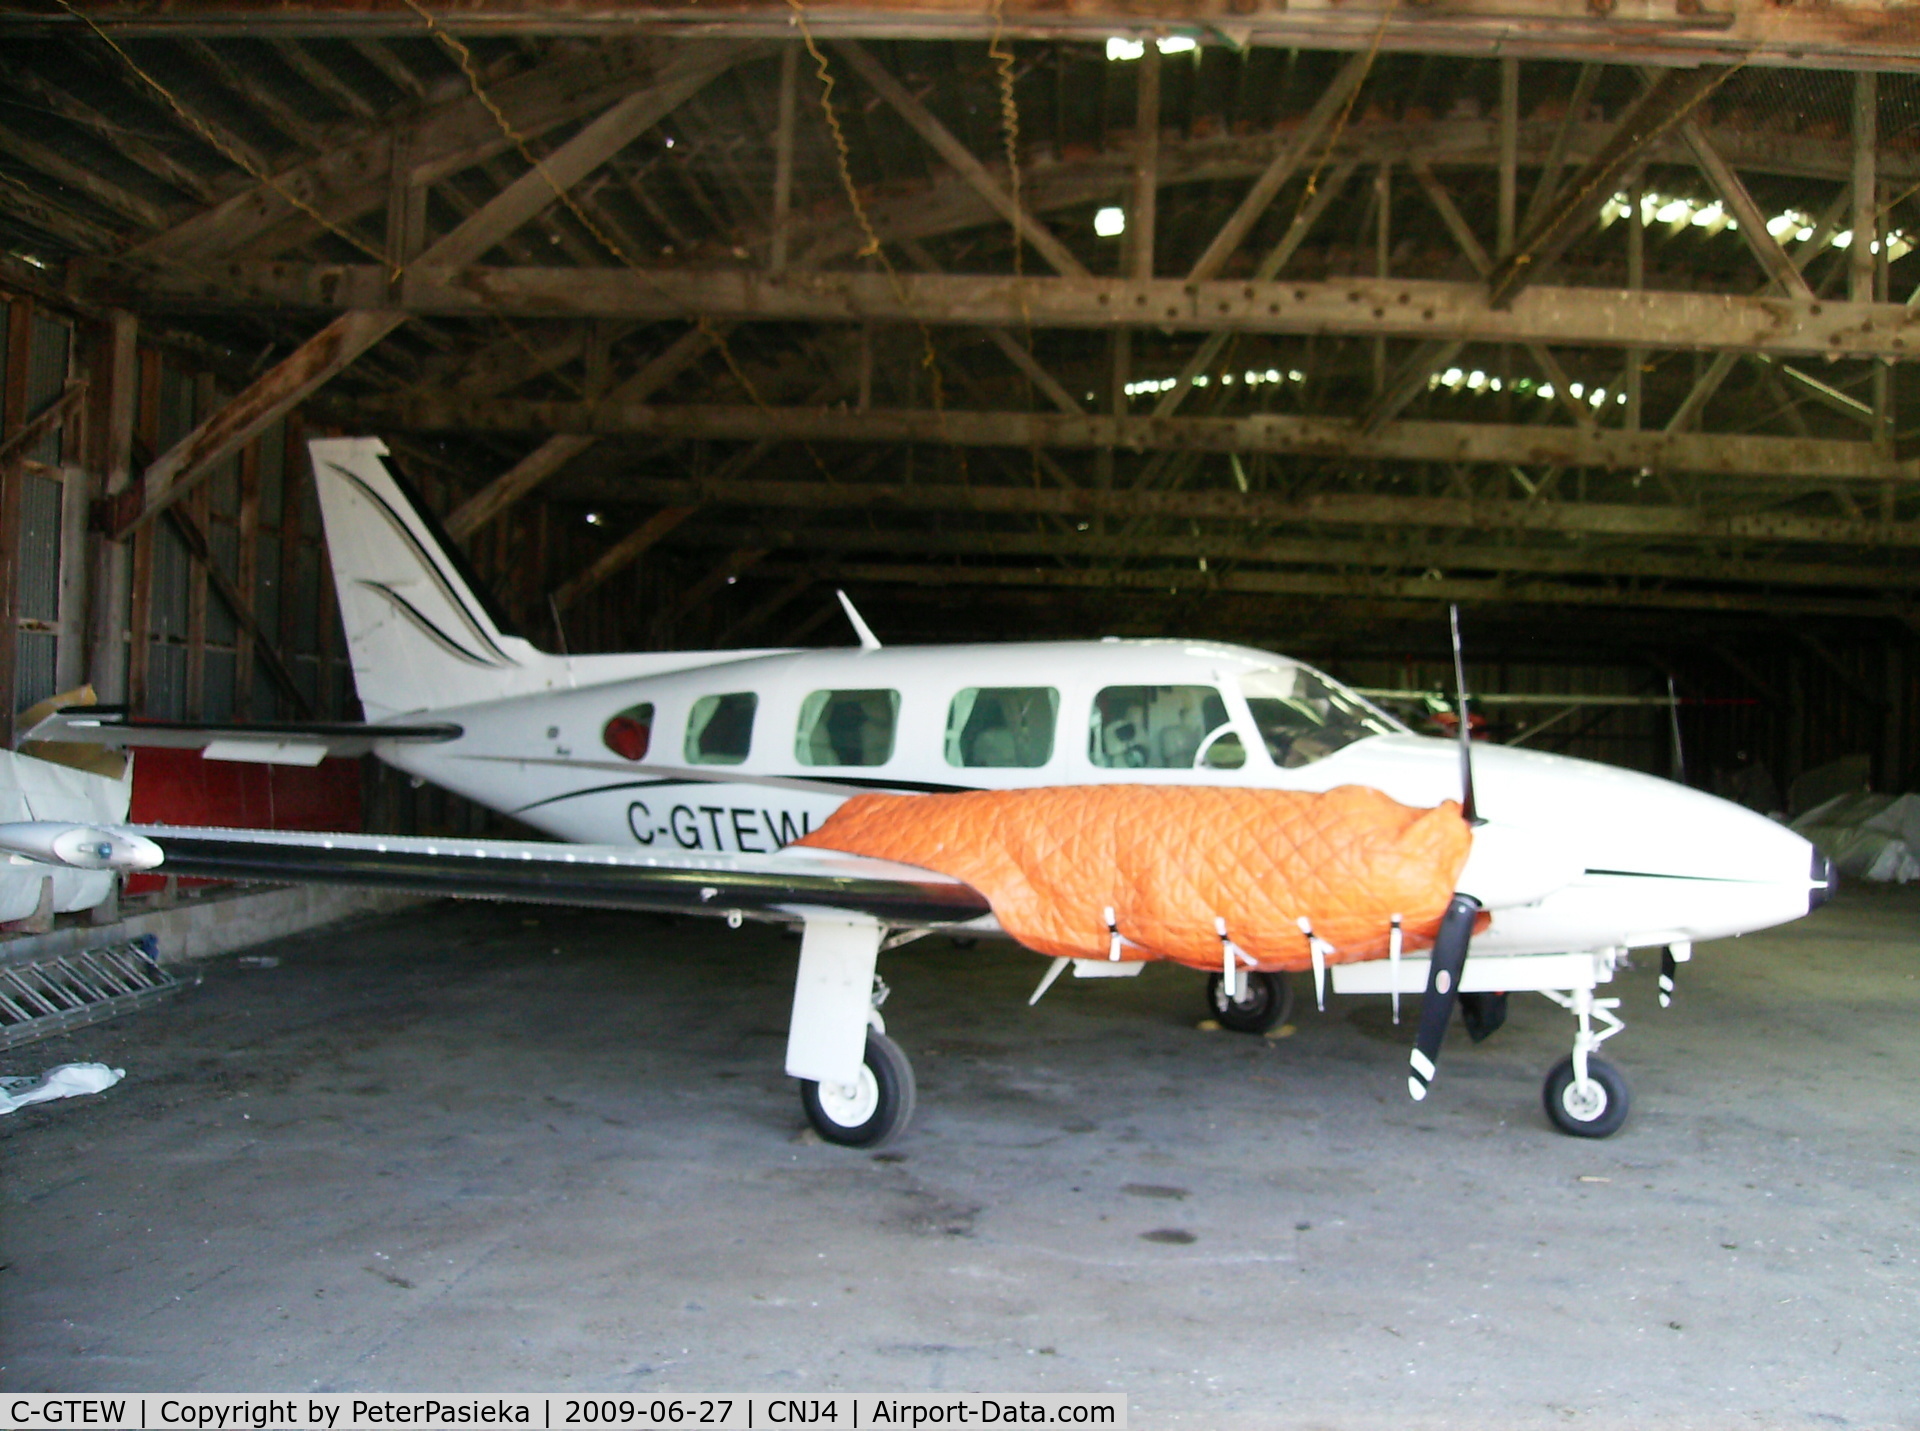 C-GTEW, 1979 Piper PA-31 C/N 31-7912081, @ Orillia Airport